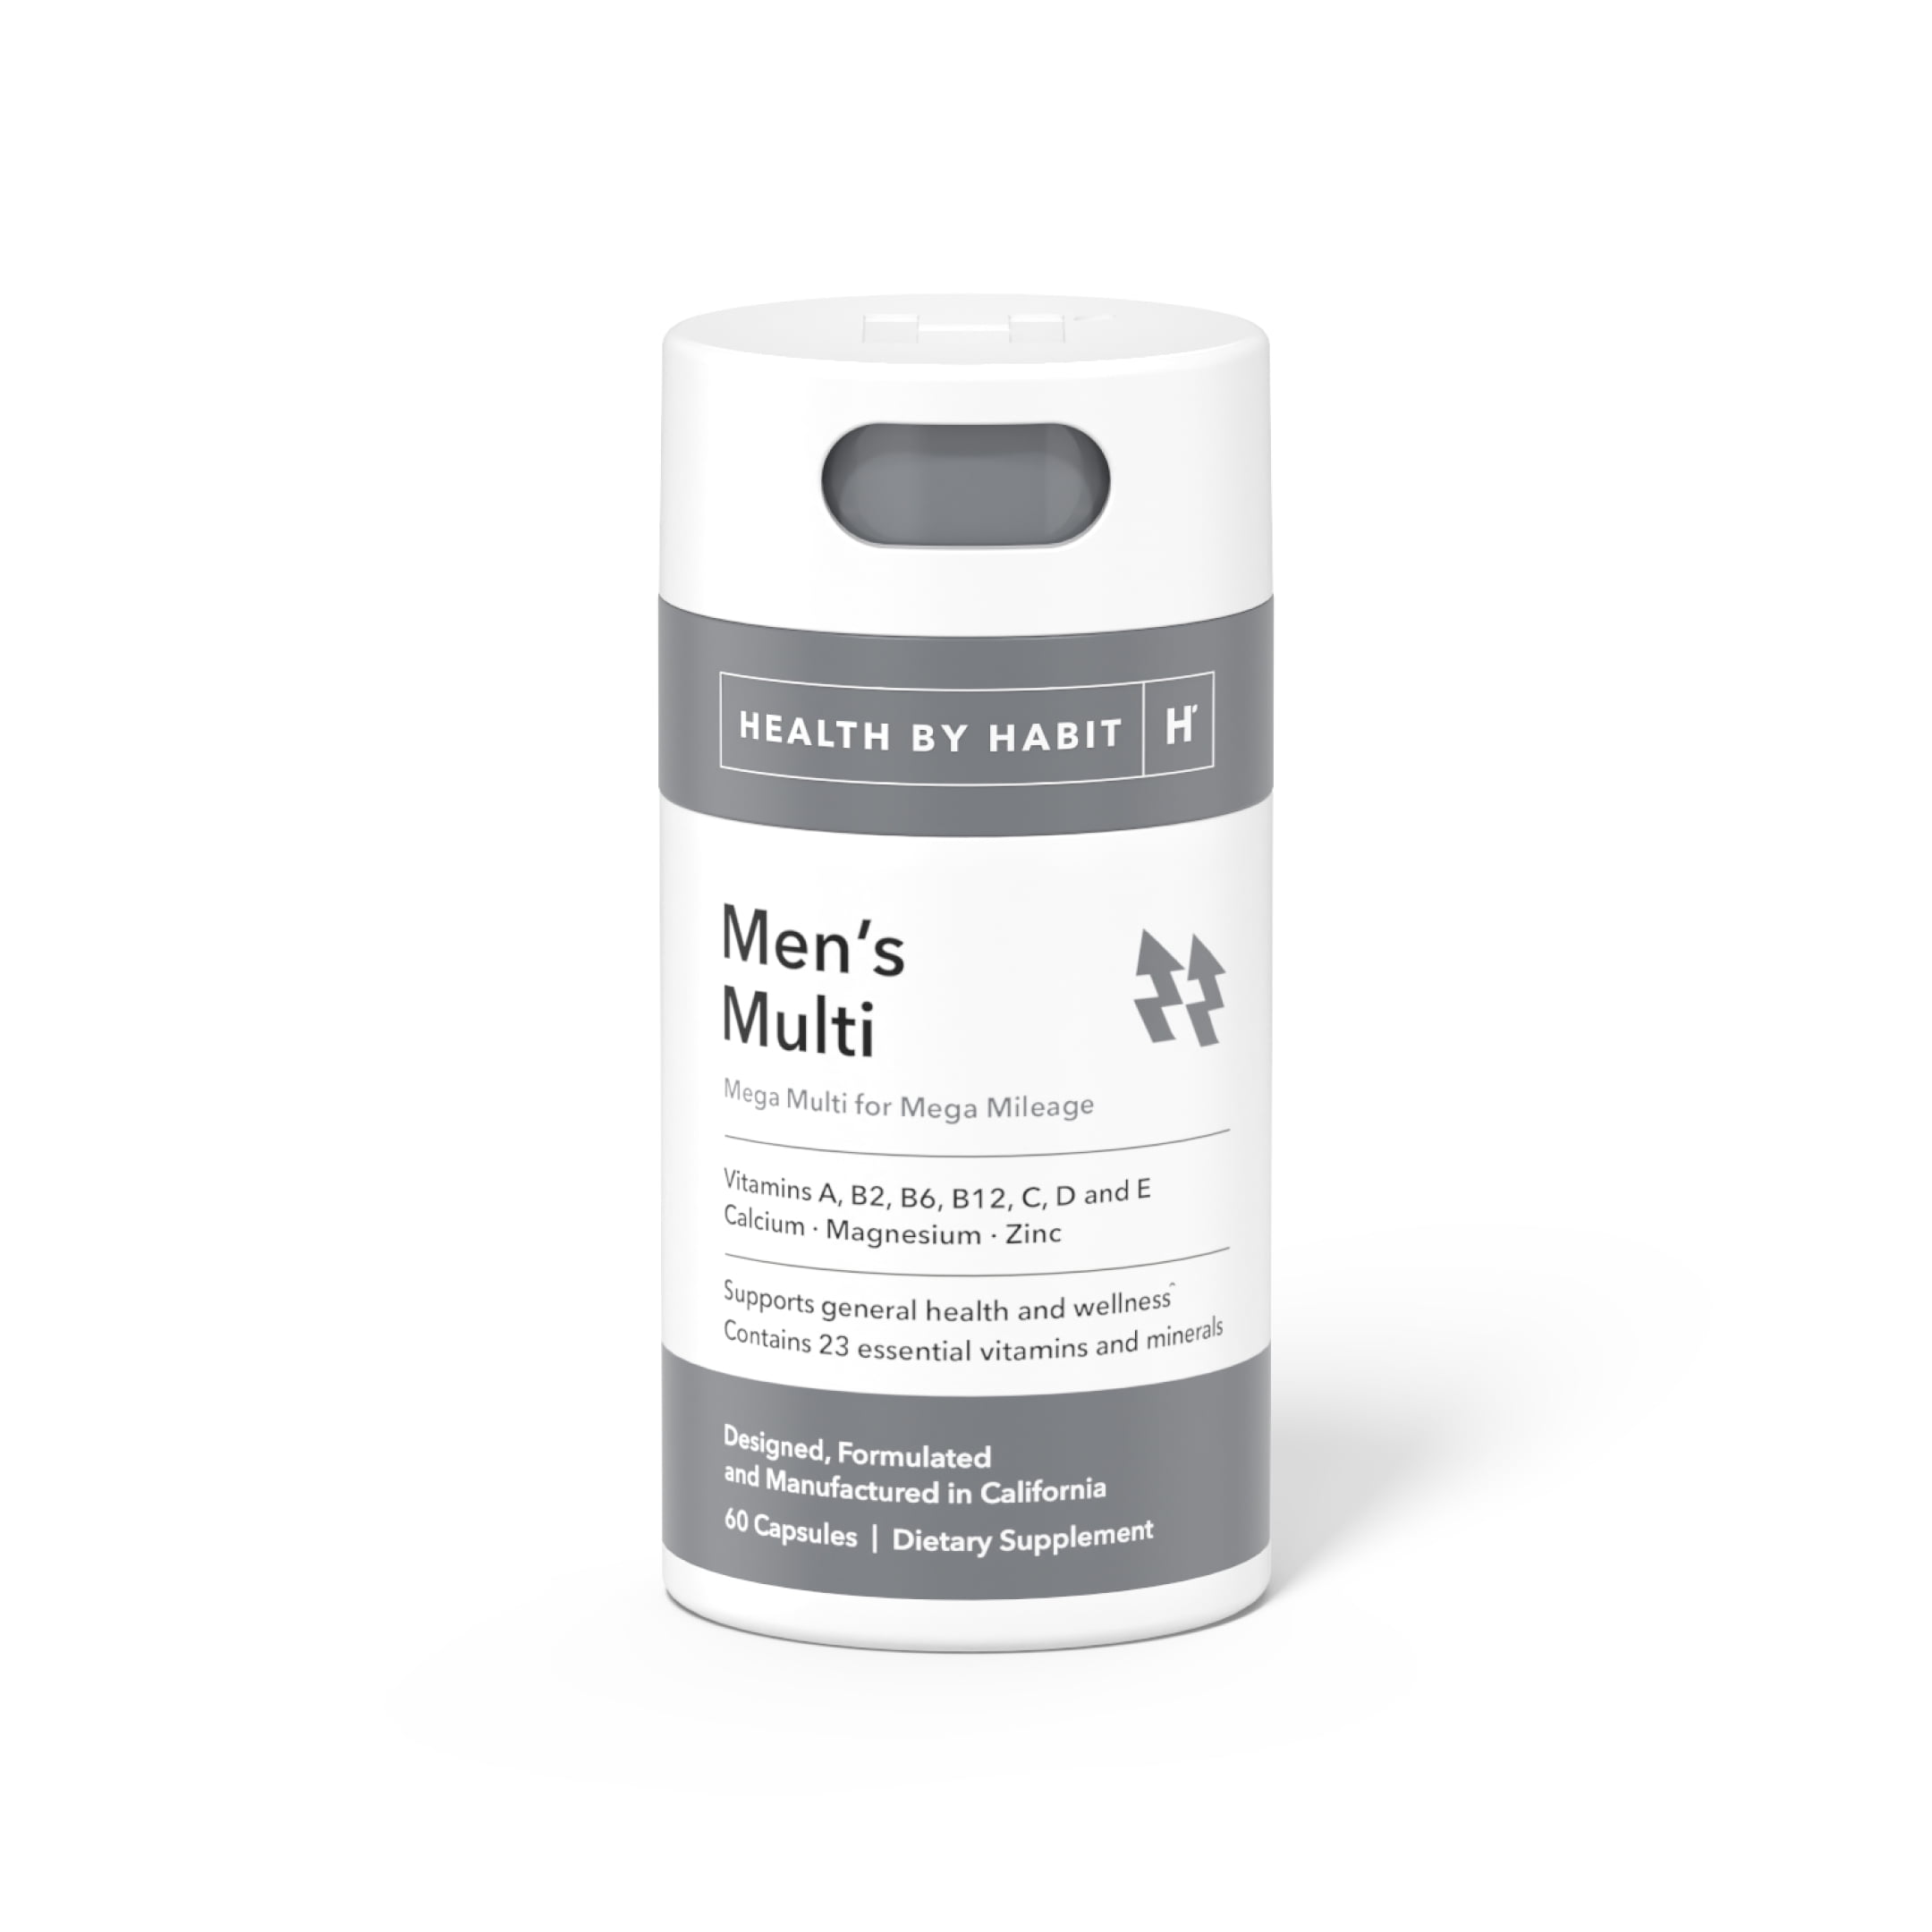 Health By Habit Multivitamin for Men, Vitamin Blend, Magnesium, Zinc, 60 Capsules